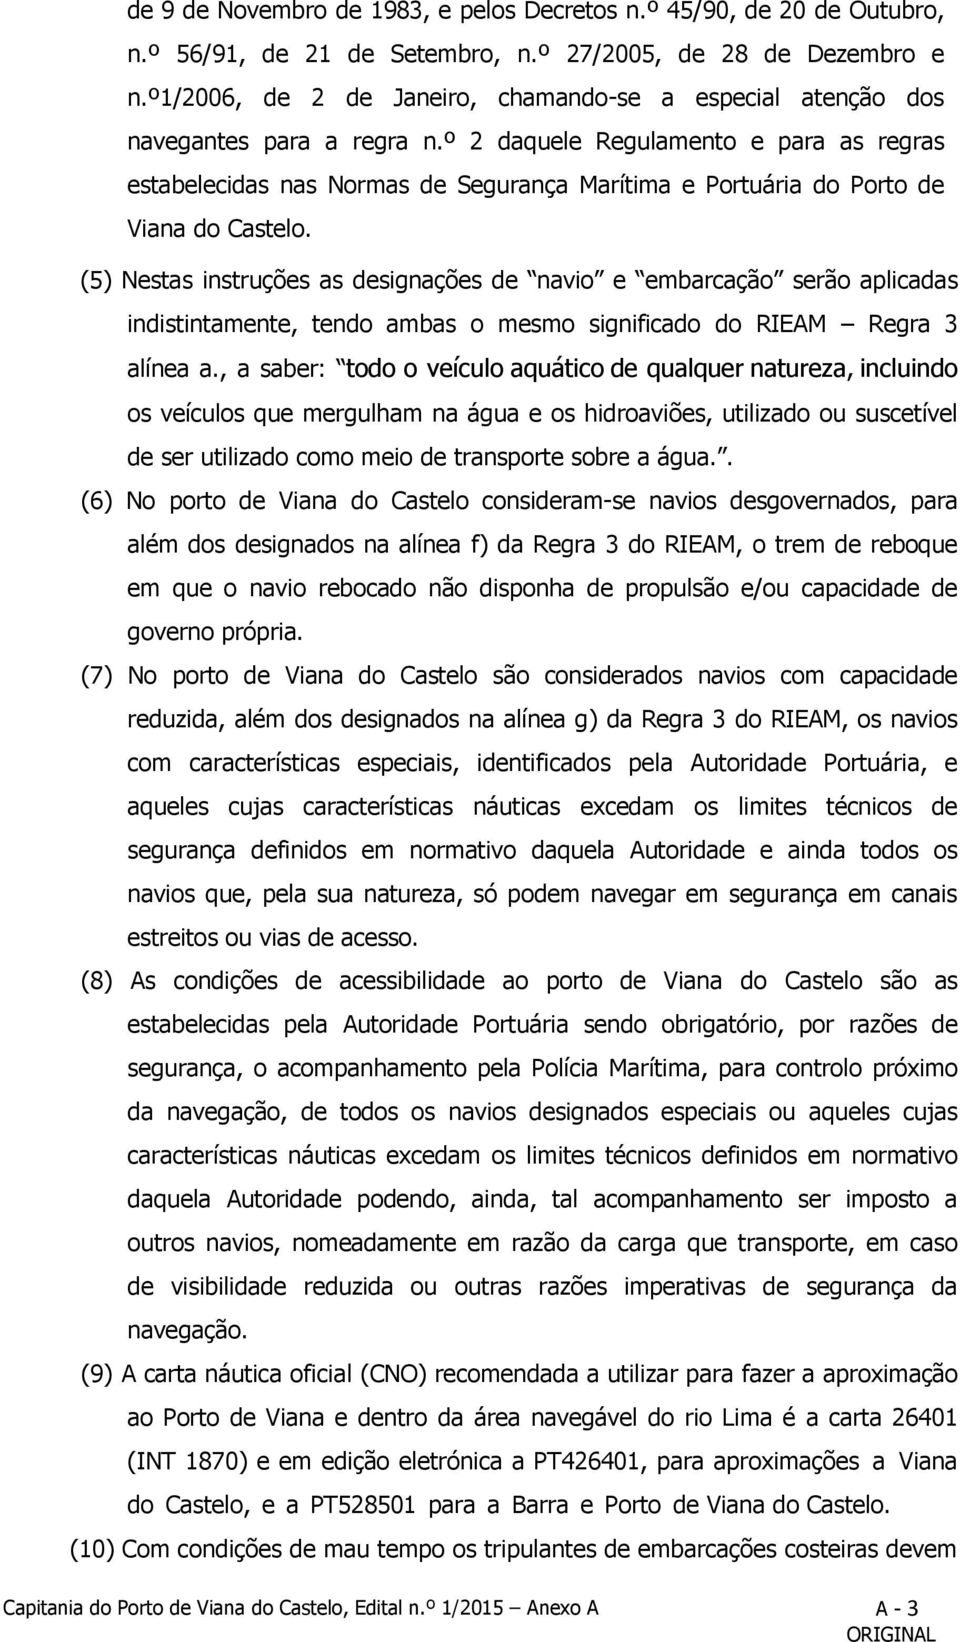 º 2 daquele Regulamento e para as regras estabelecidas nas Normas de Segurança Marítima e Portuária do Porto de Viana do Castelo.